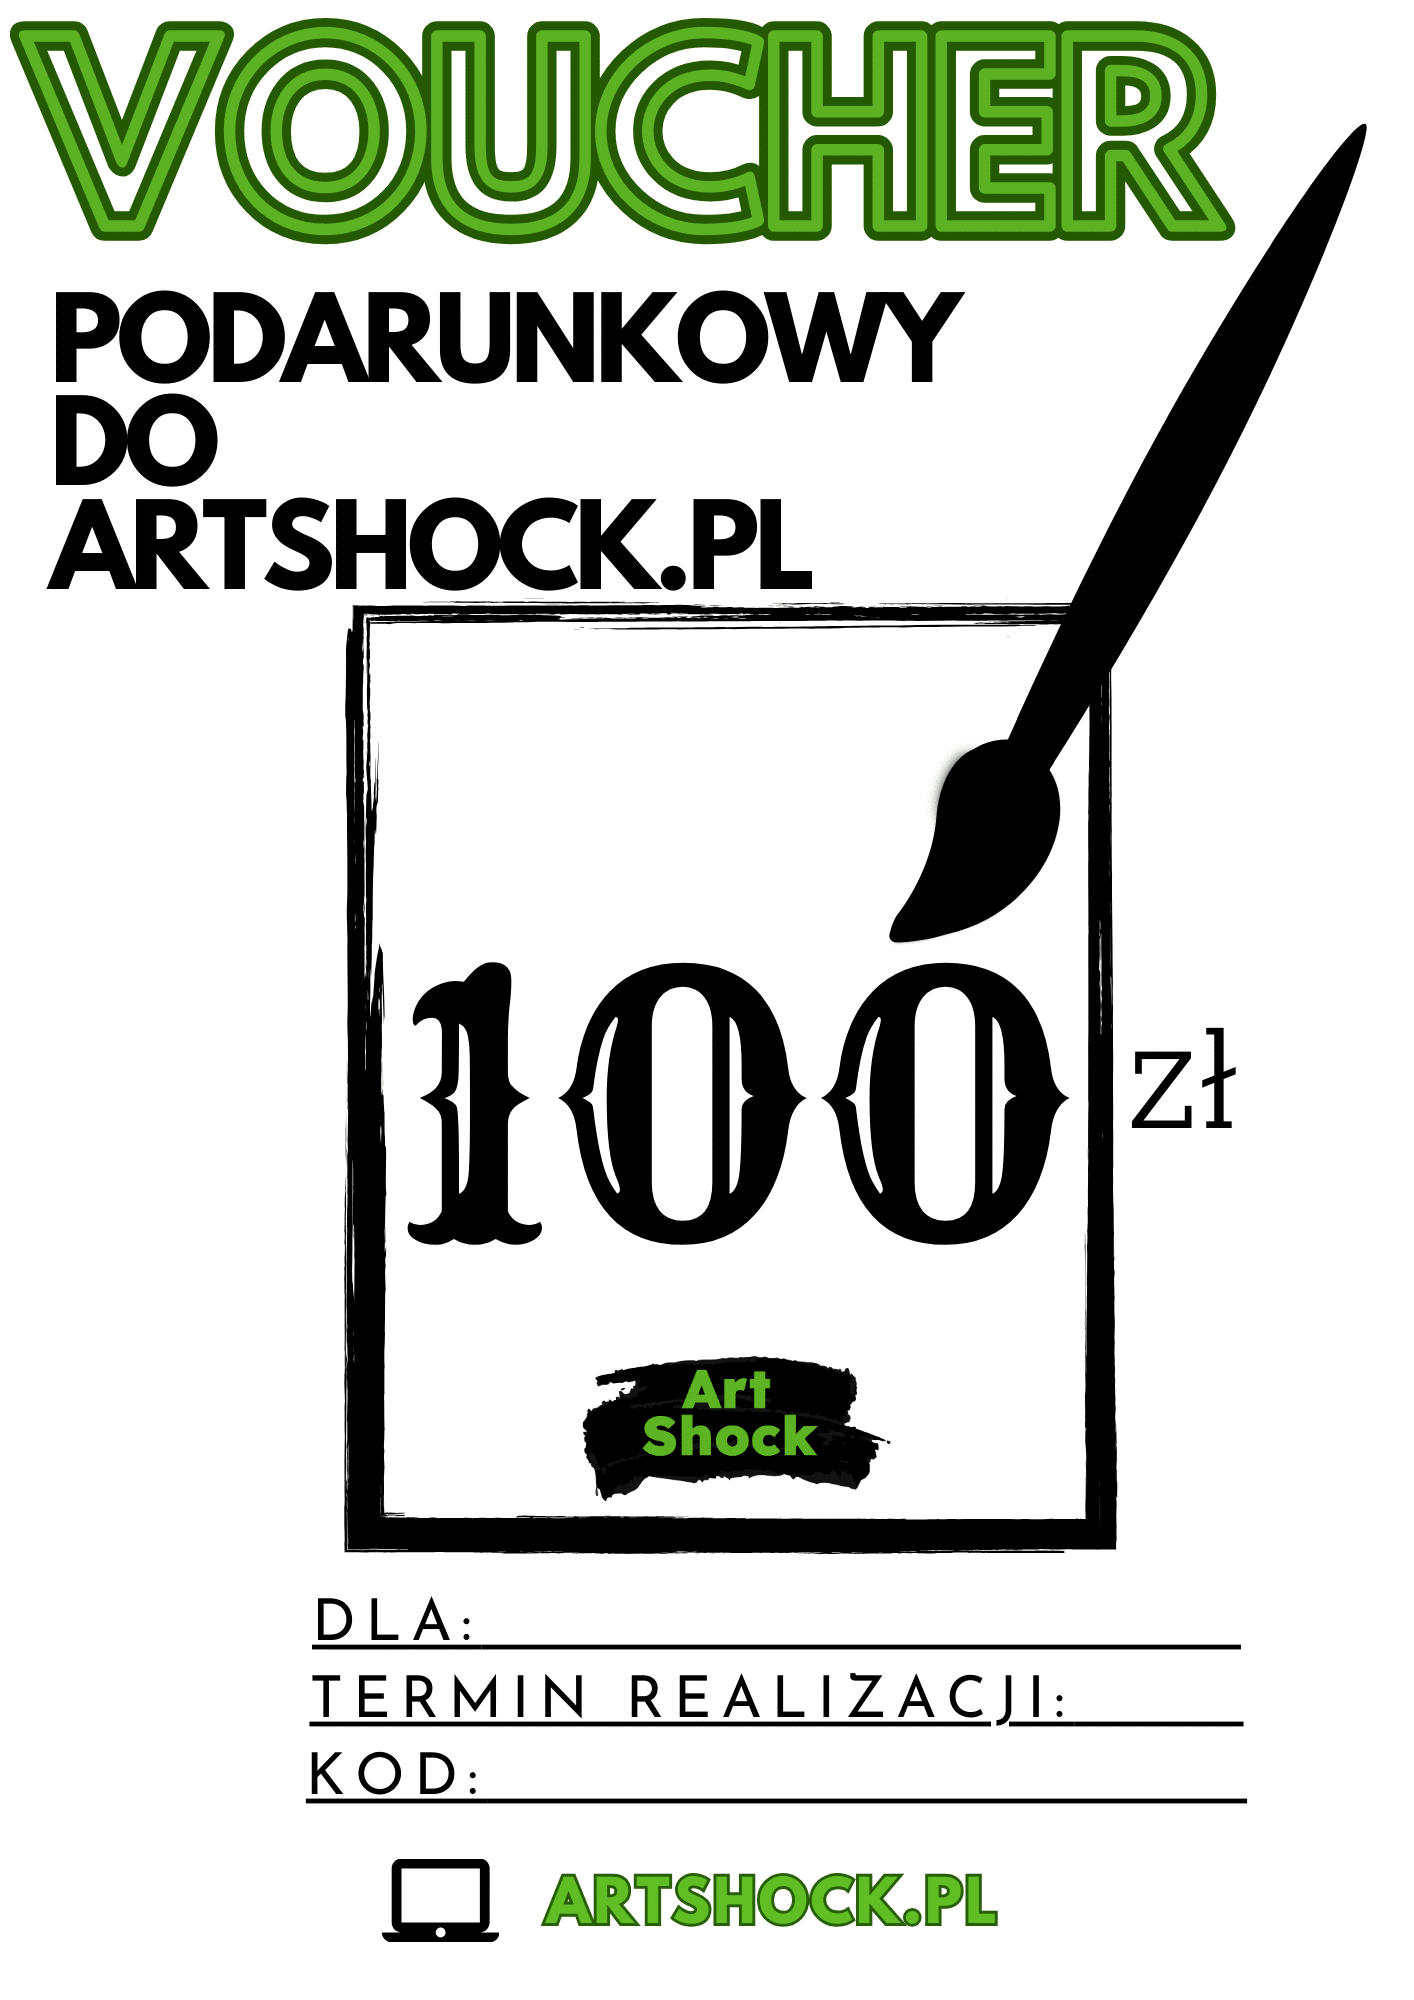 Bon podarunkowy do Artshock.pl 100zł